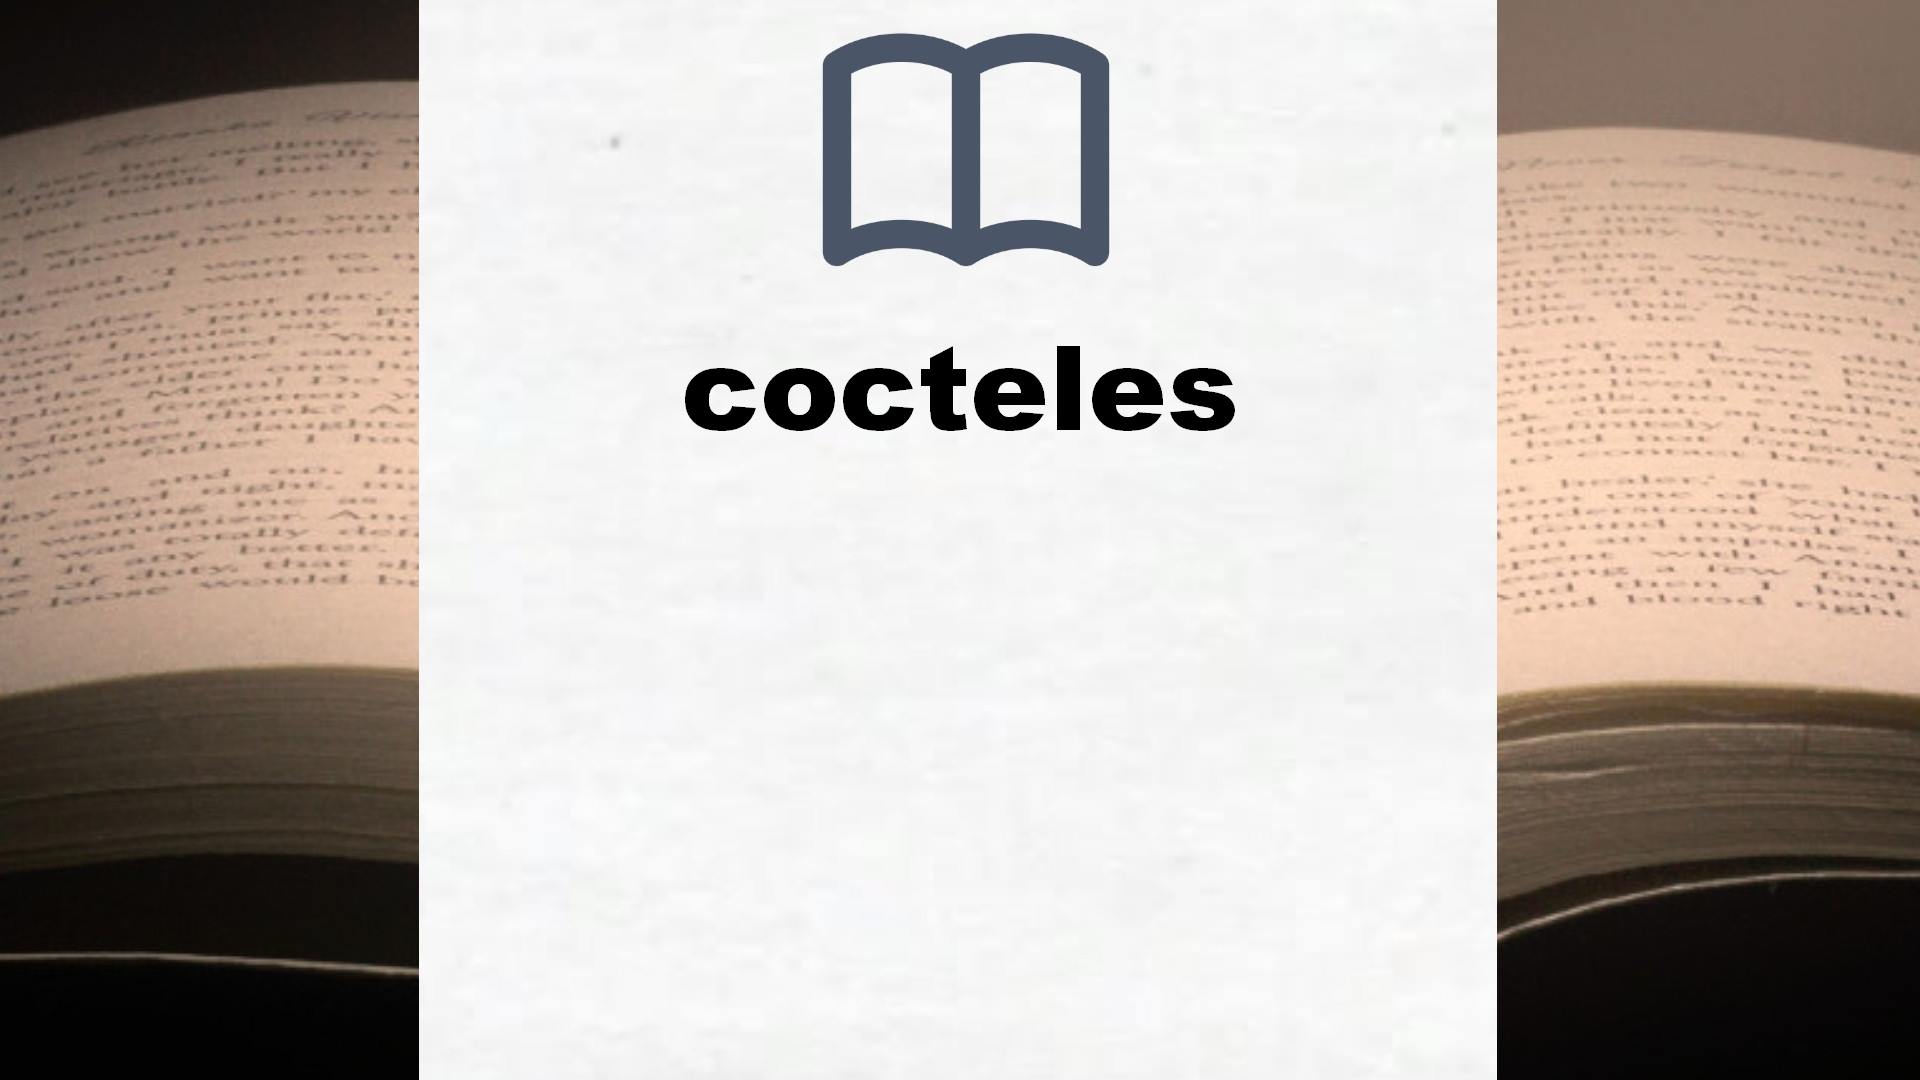 Libros sobre cocteles